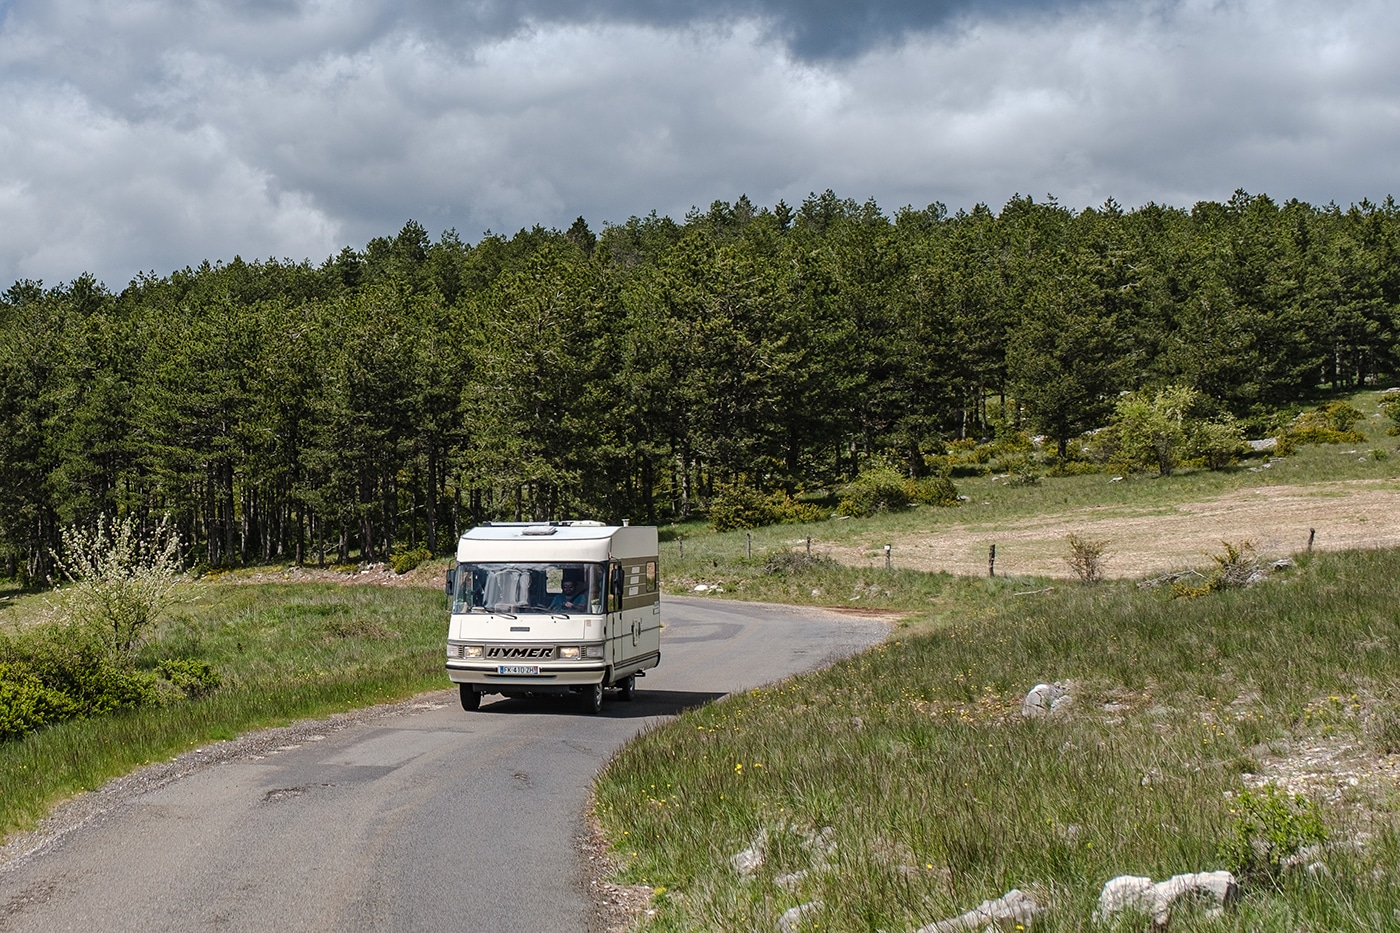 Roadtrip en France en camping-car